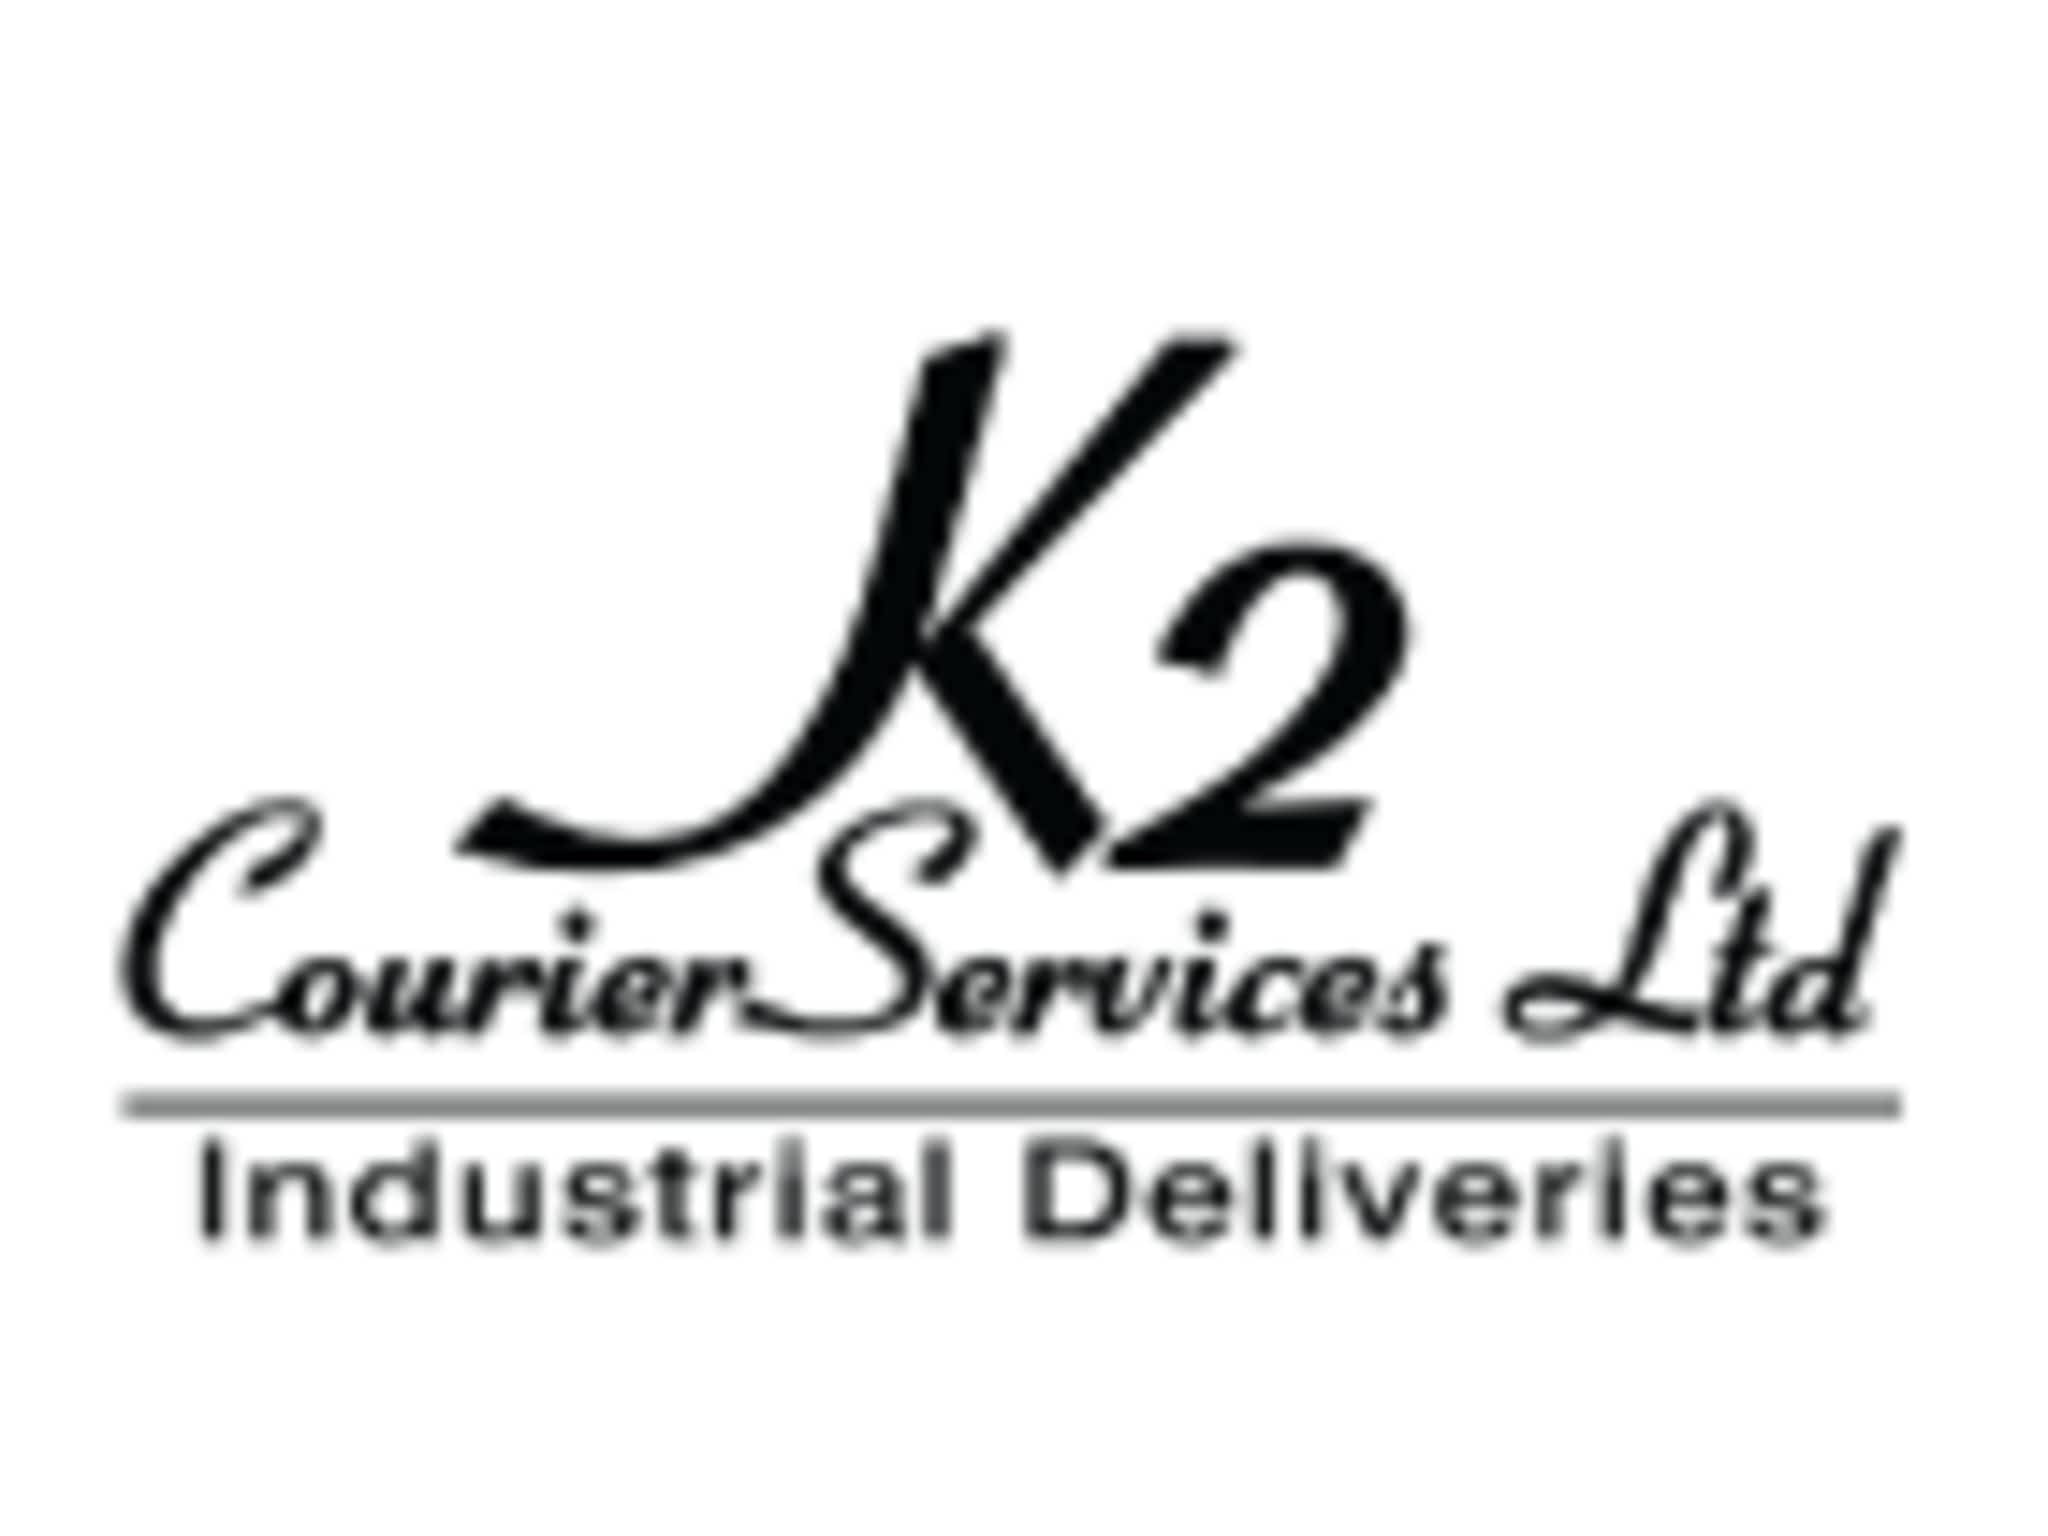 photo K2 Courier Services Ltd.